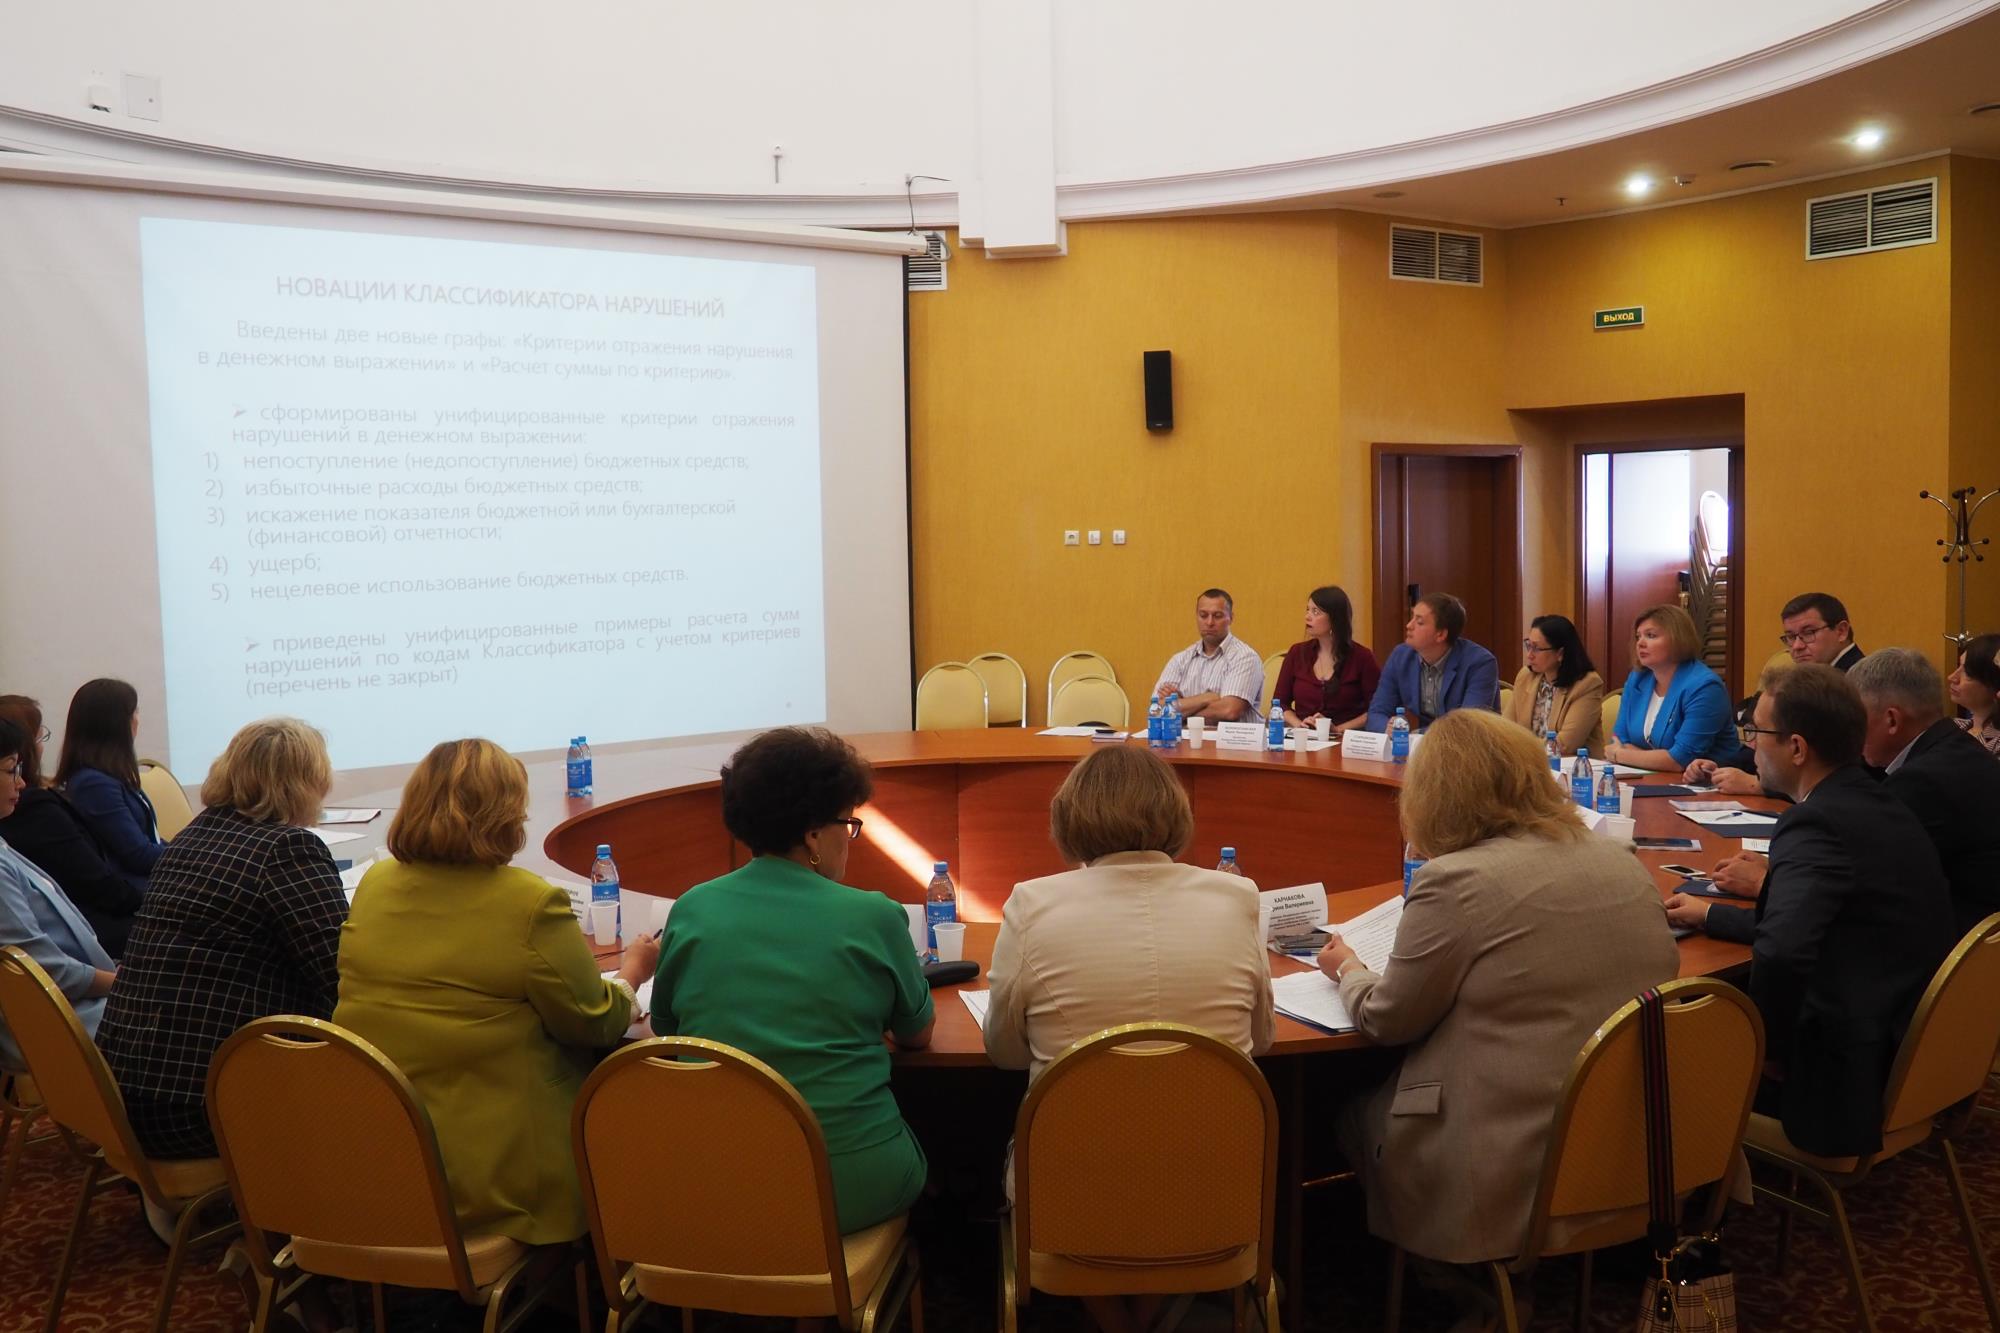 Представители Контрольно-счетной палаты Петербурга приняли участие в дискуссии по вопросам классификации нарушений